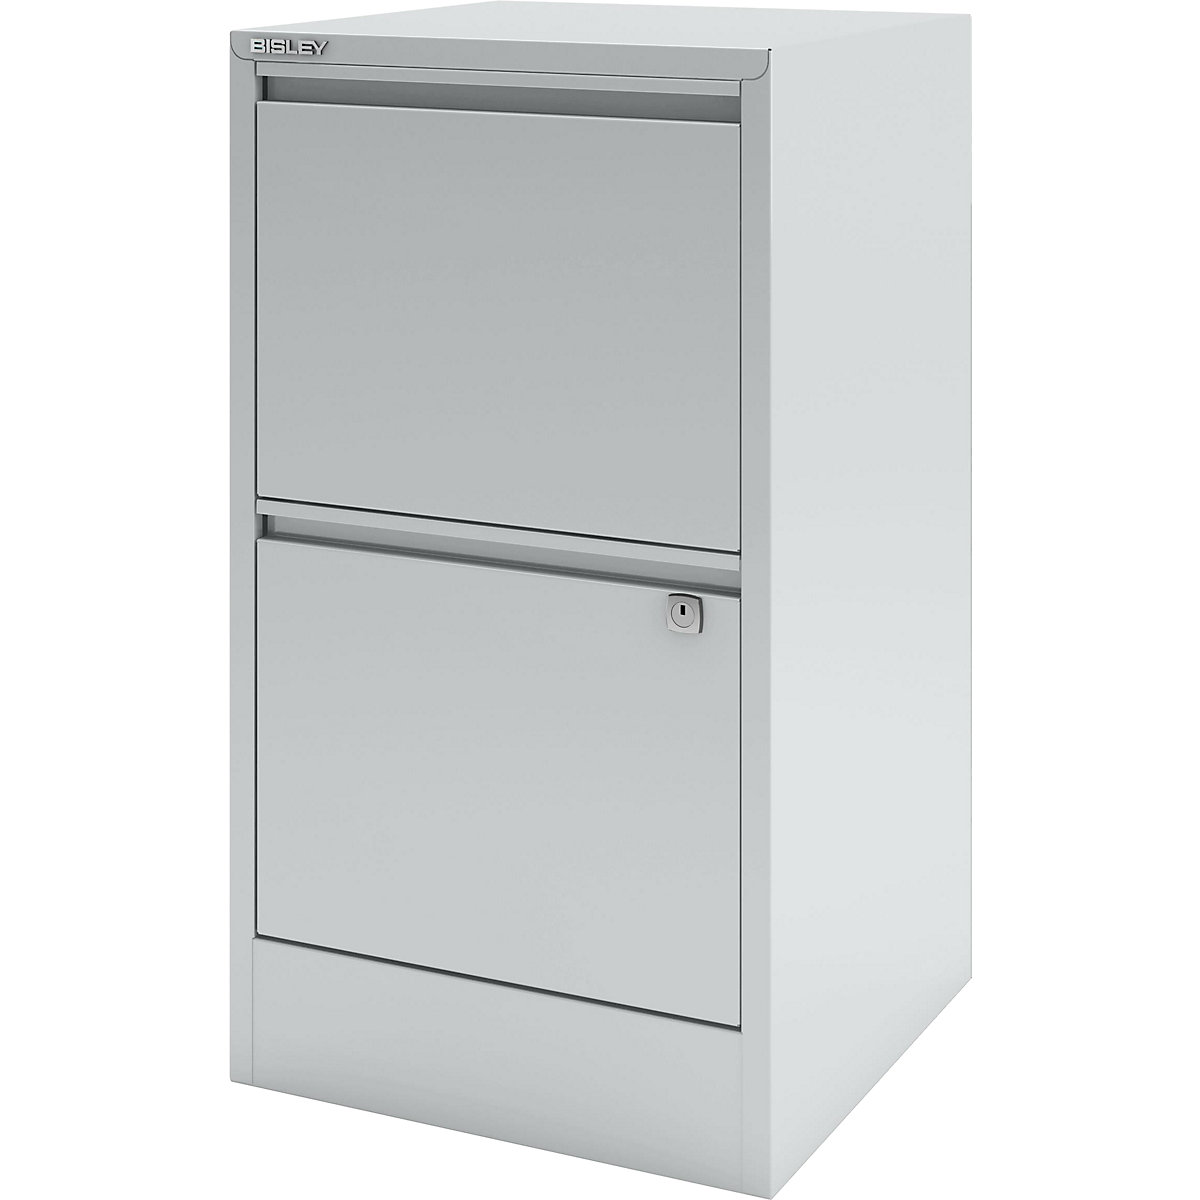 HomeFiler suspension filing cabinet – BISLEY, 2 suspension file drawers, light grey-4